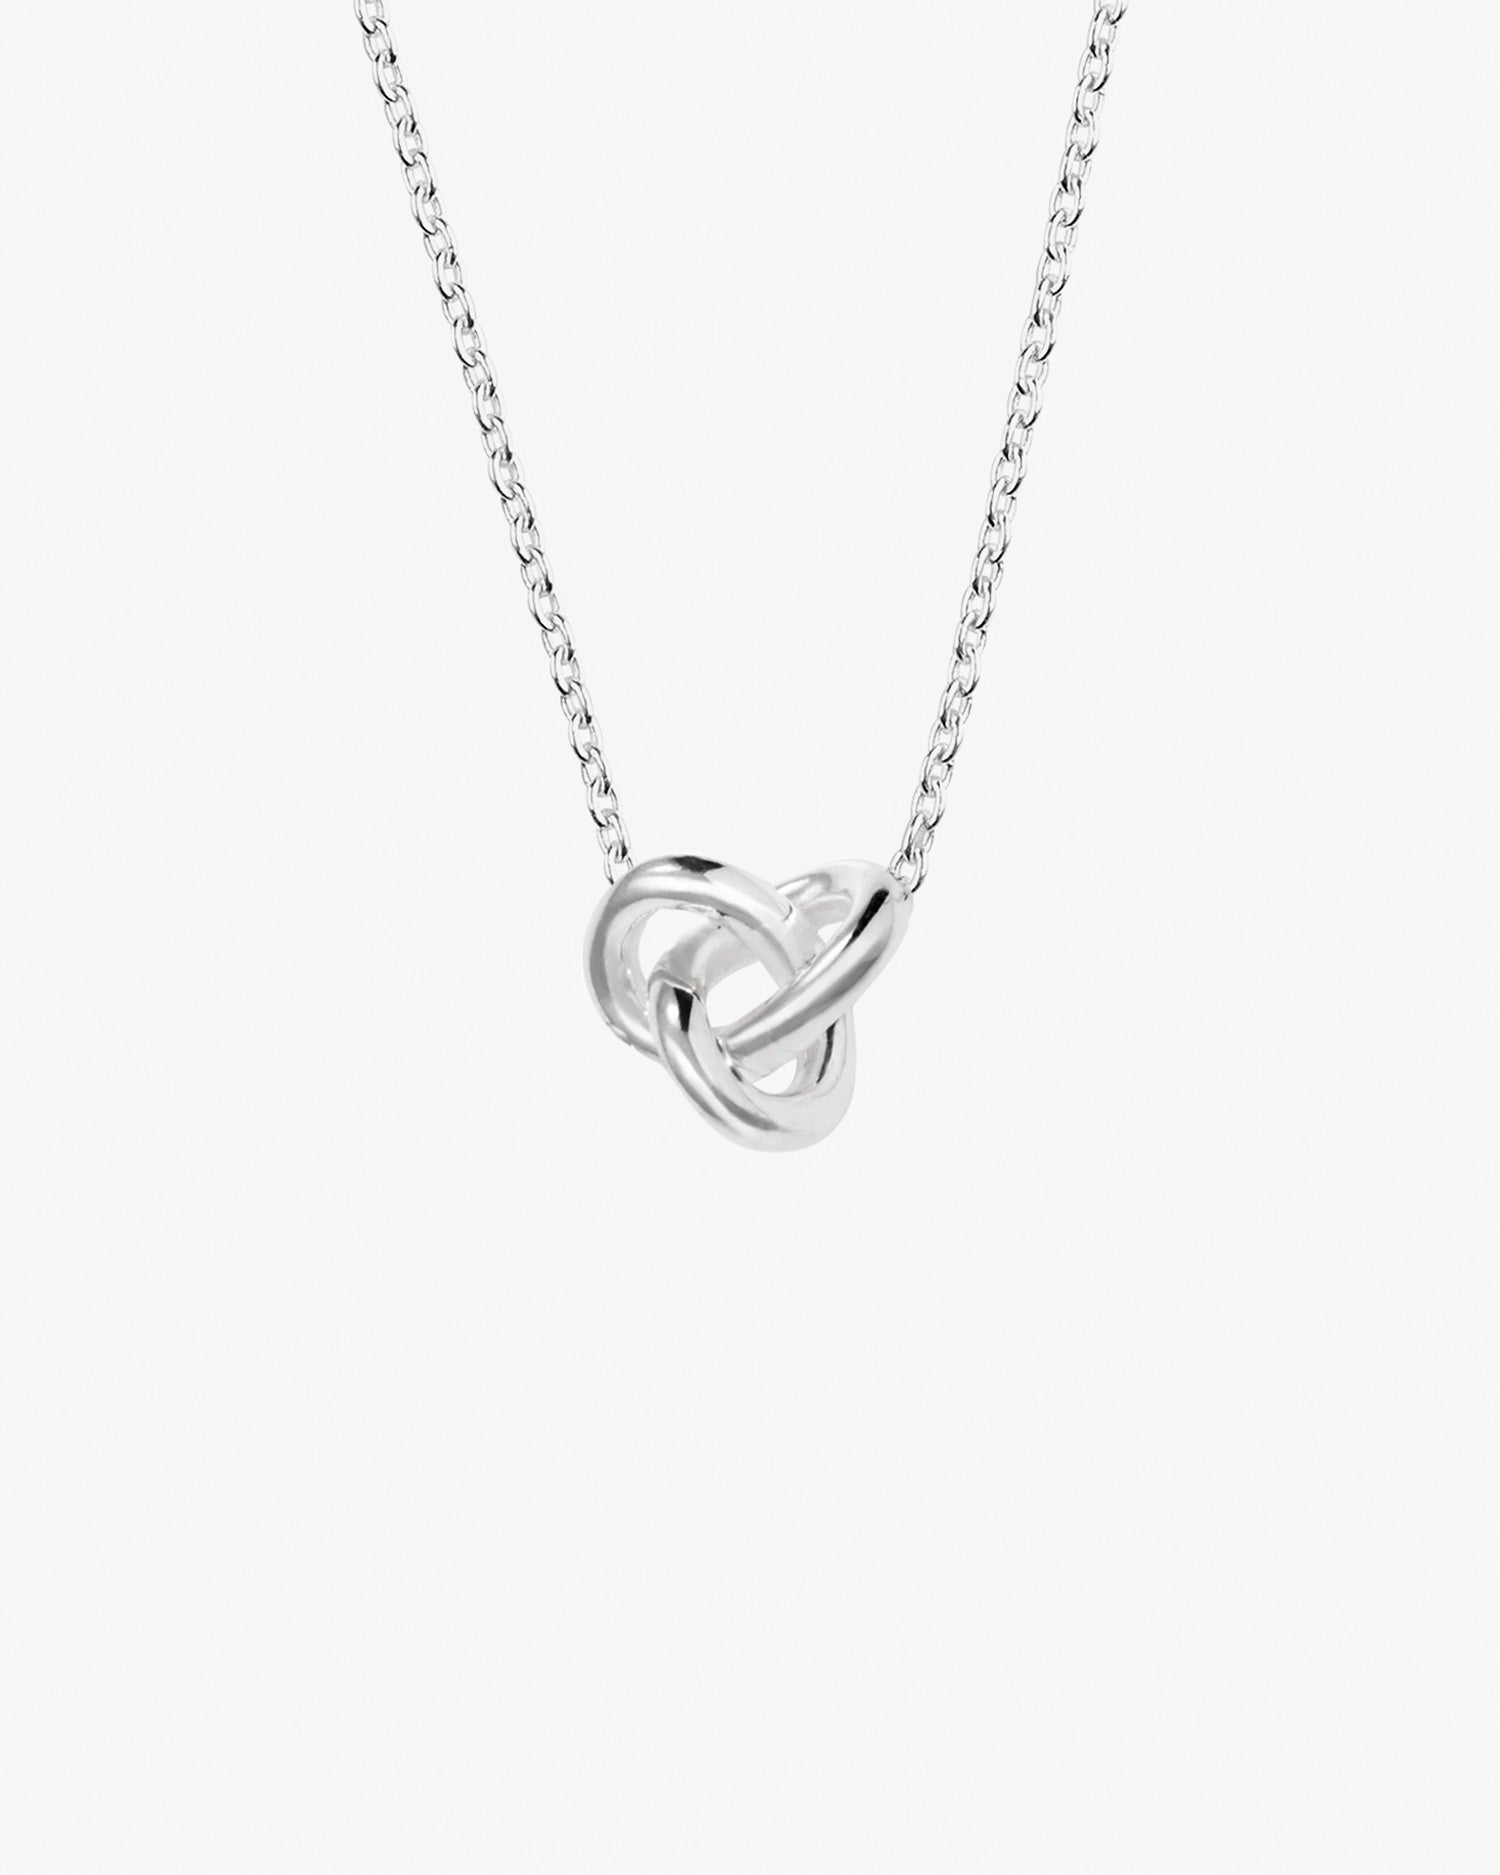 le-knot-necklace-03